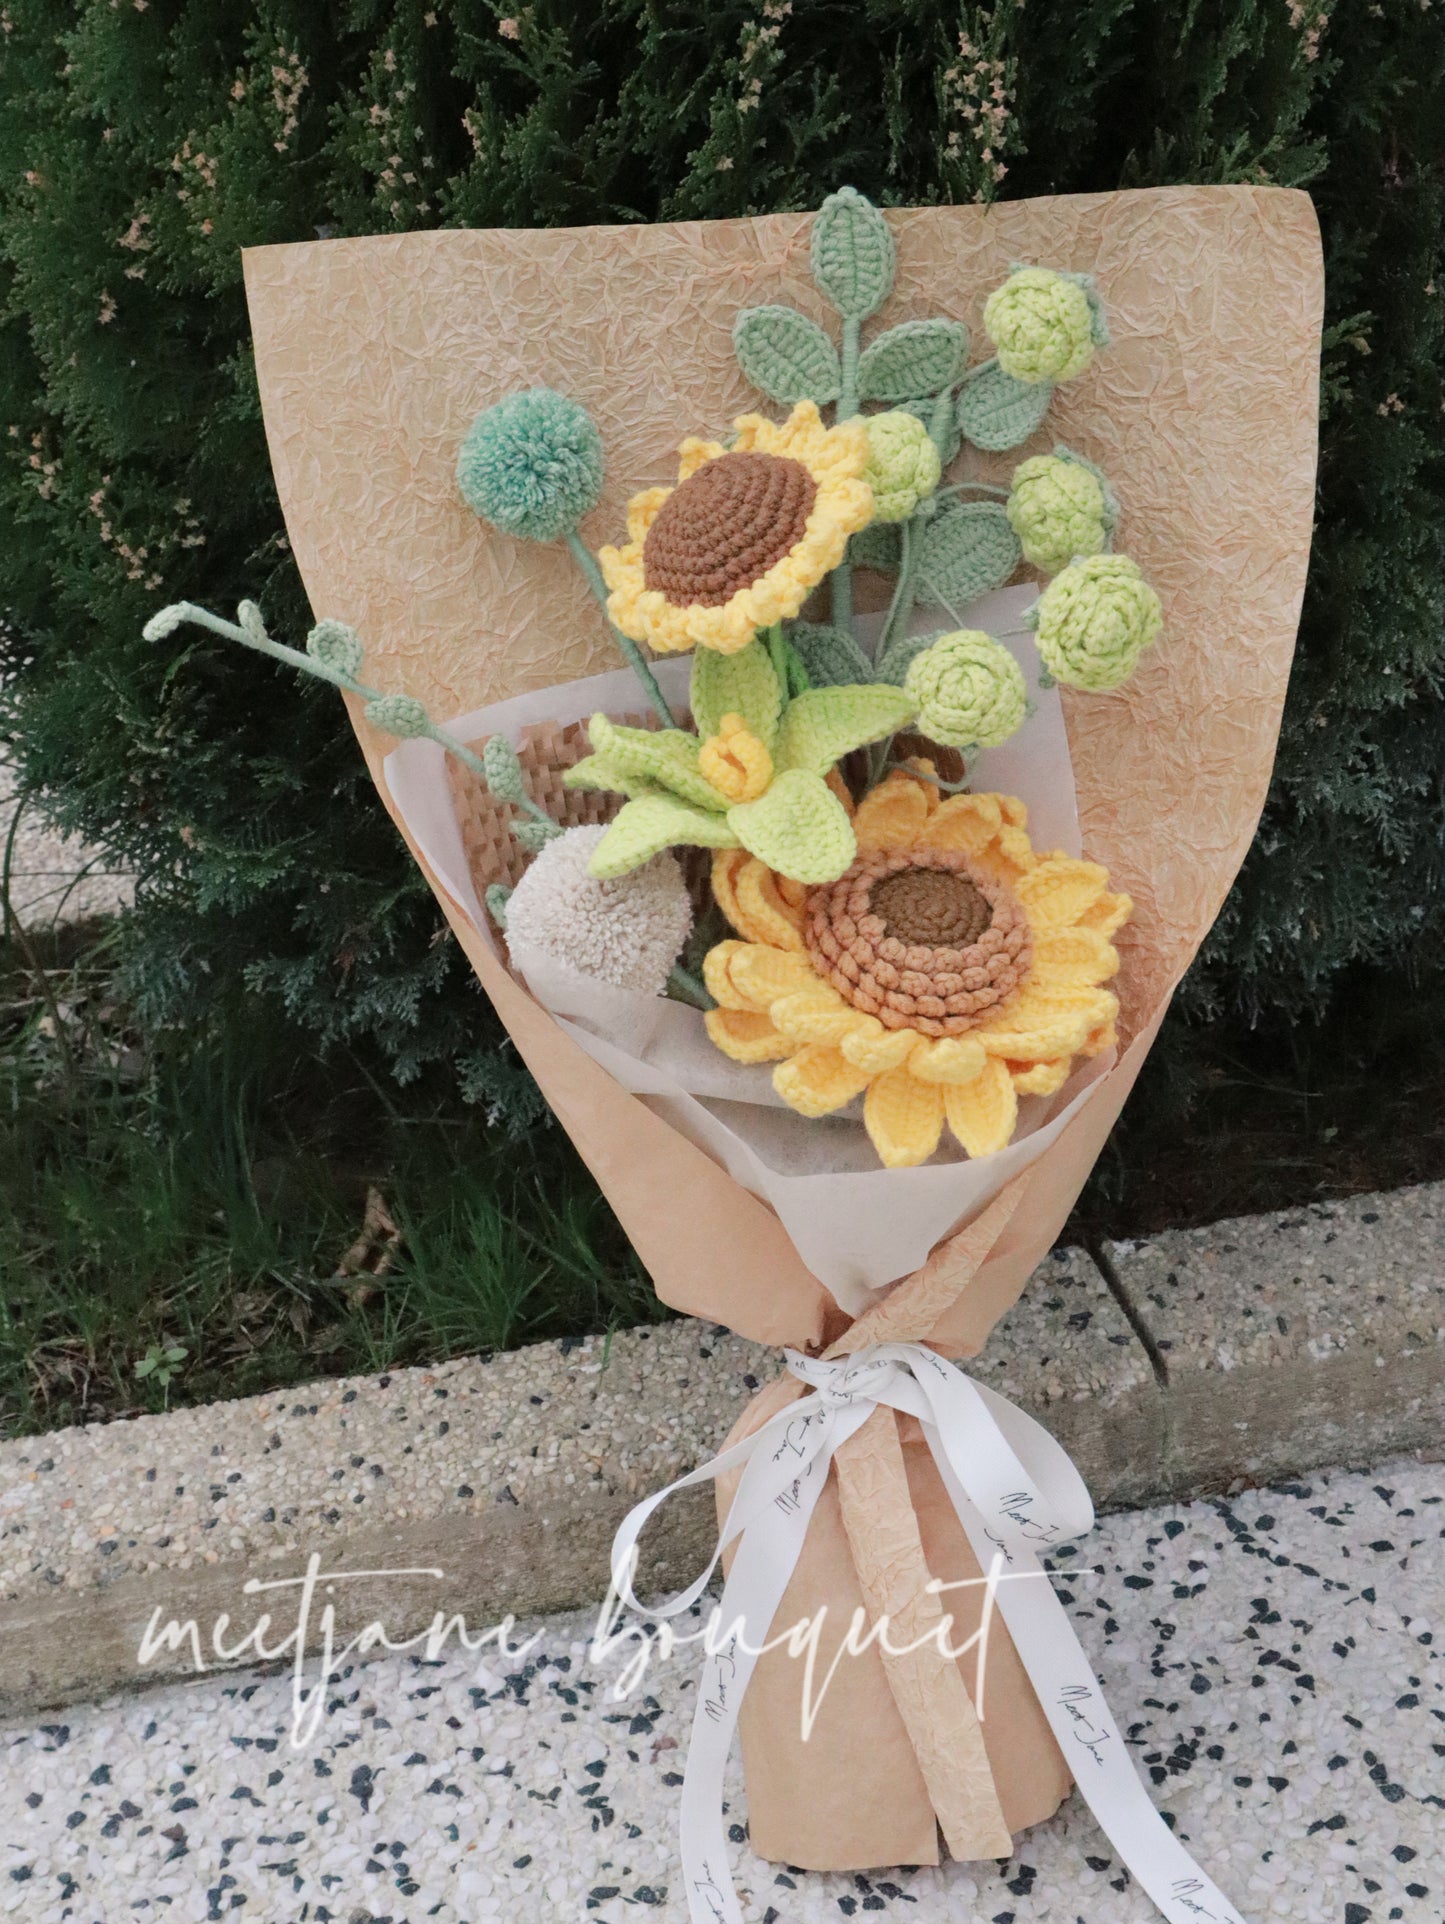 Meetjane Bouquet|Melbourne handmade |Graduation gift|Sunflower